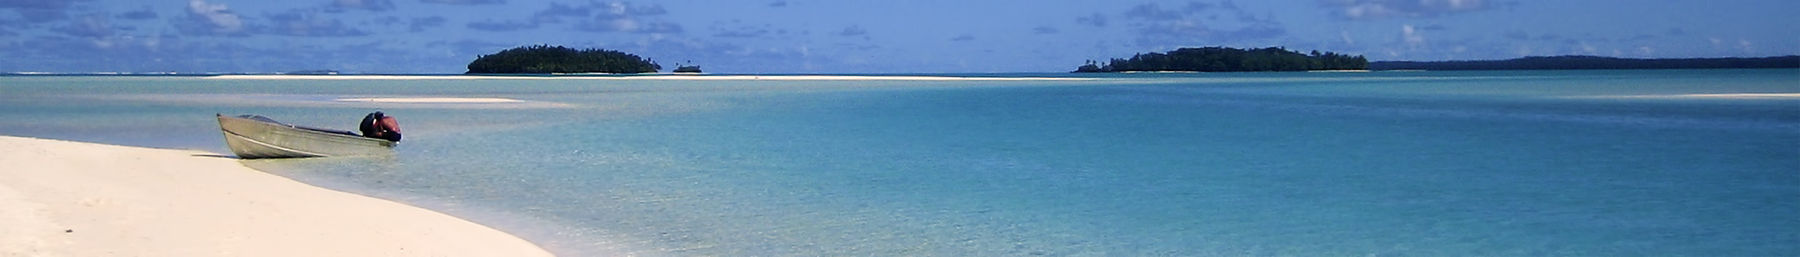 Bandera de la playa de las Islas Cook.jpg